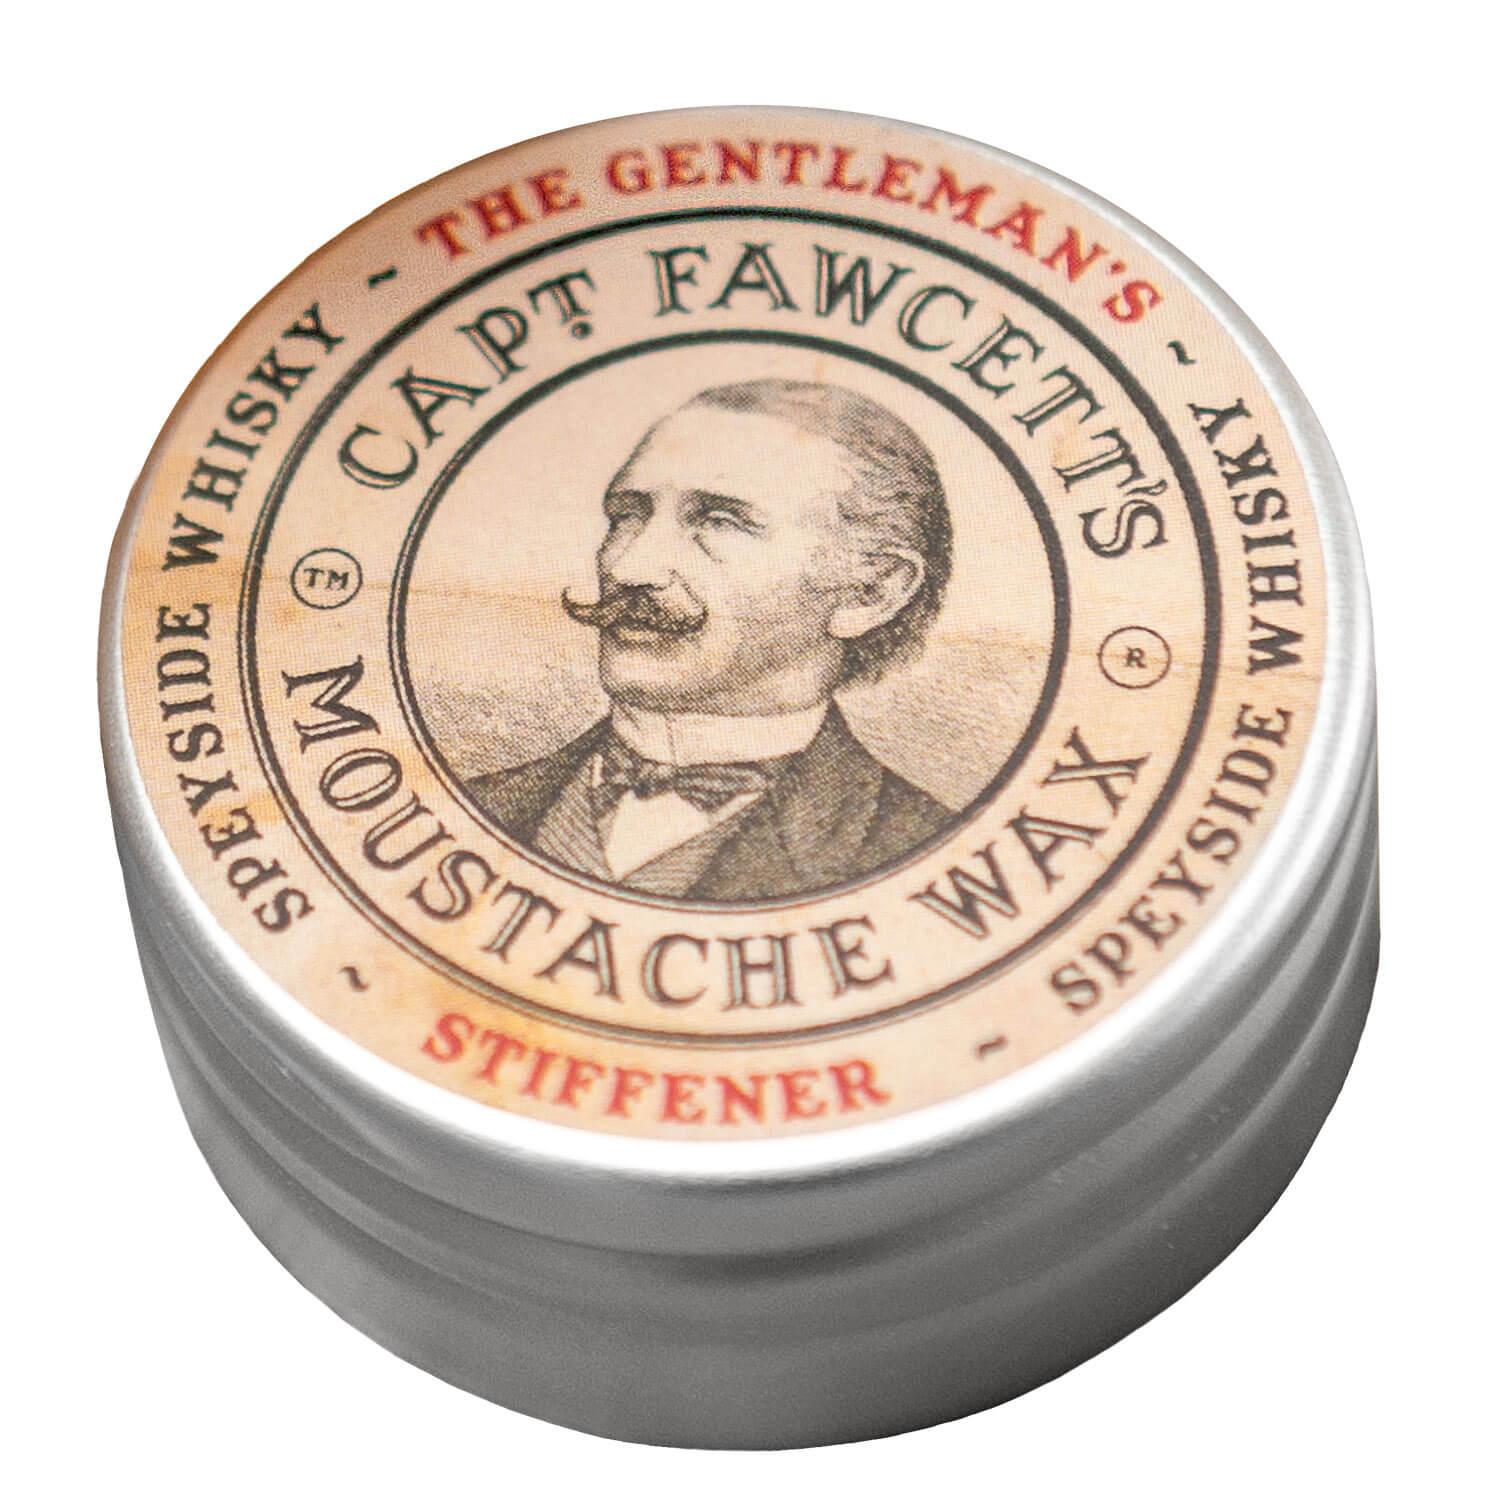 Capt. Fawcett Care - Gentleman's Stiffener Malt Whisky Moustache Wax